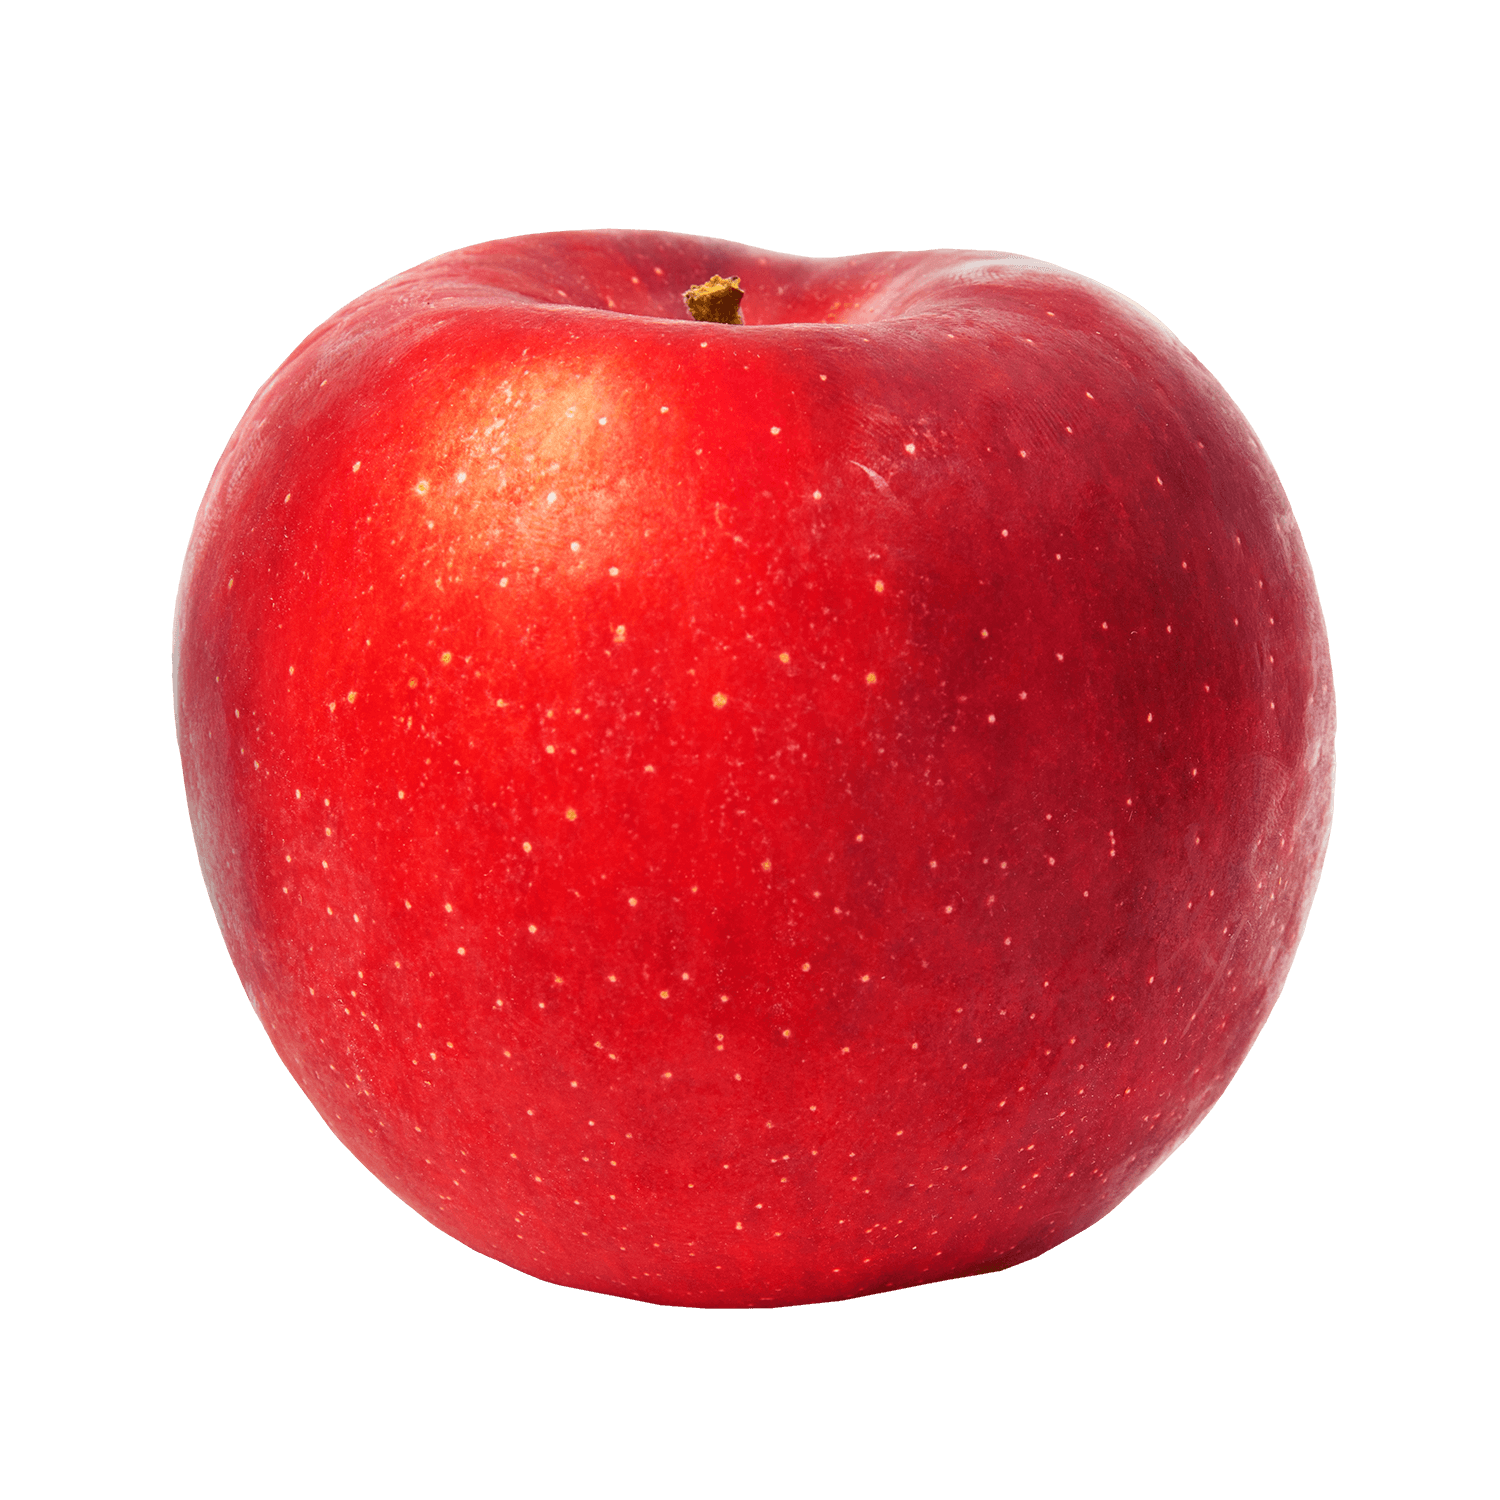 Honeycrisp – Yes! Apples